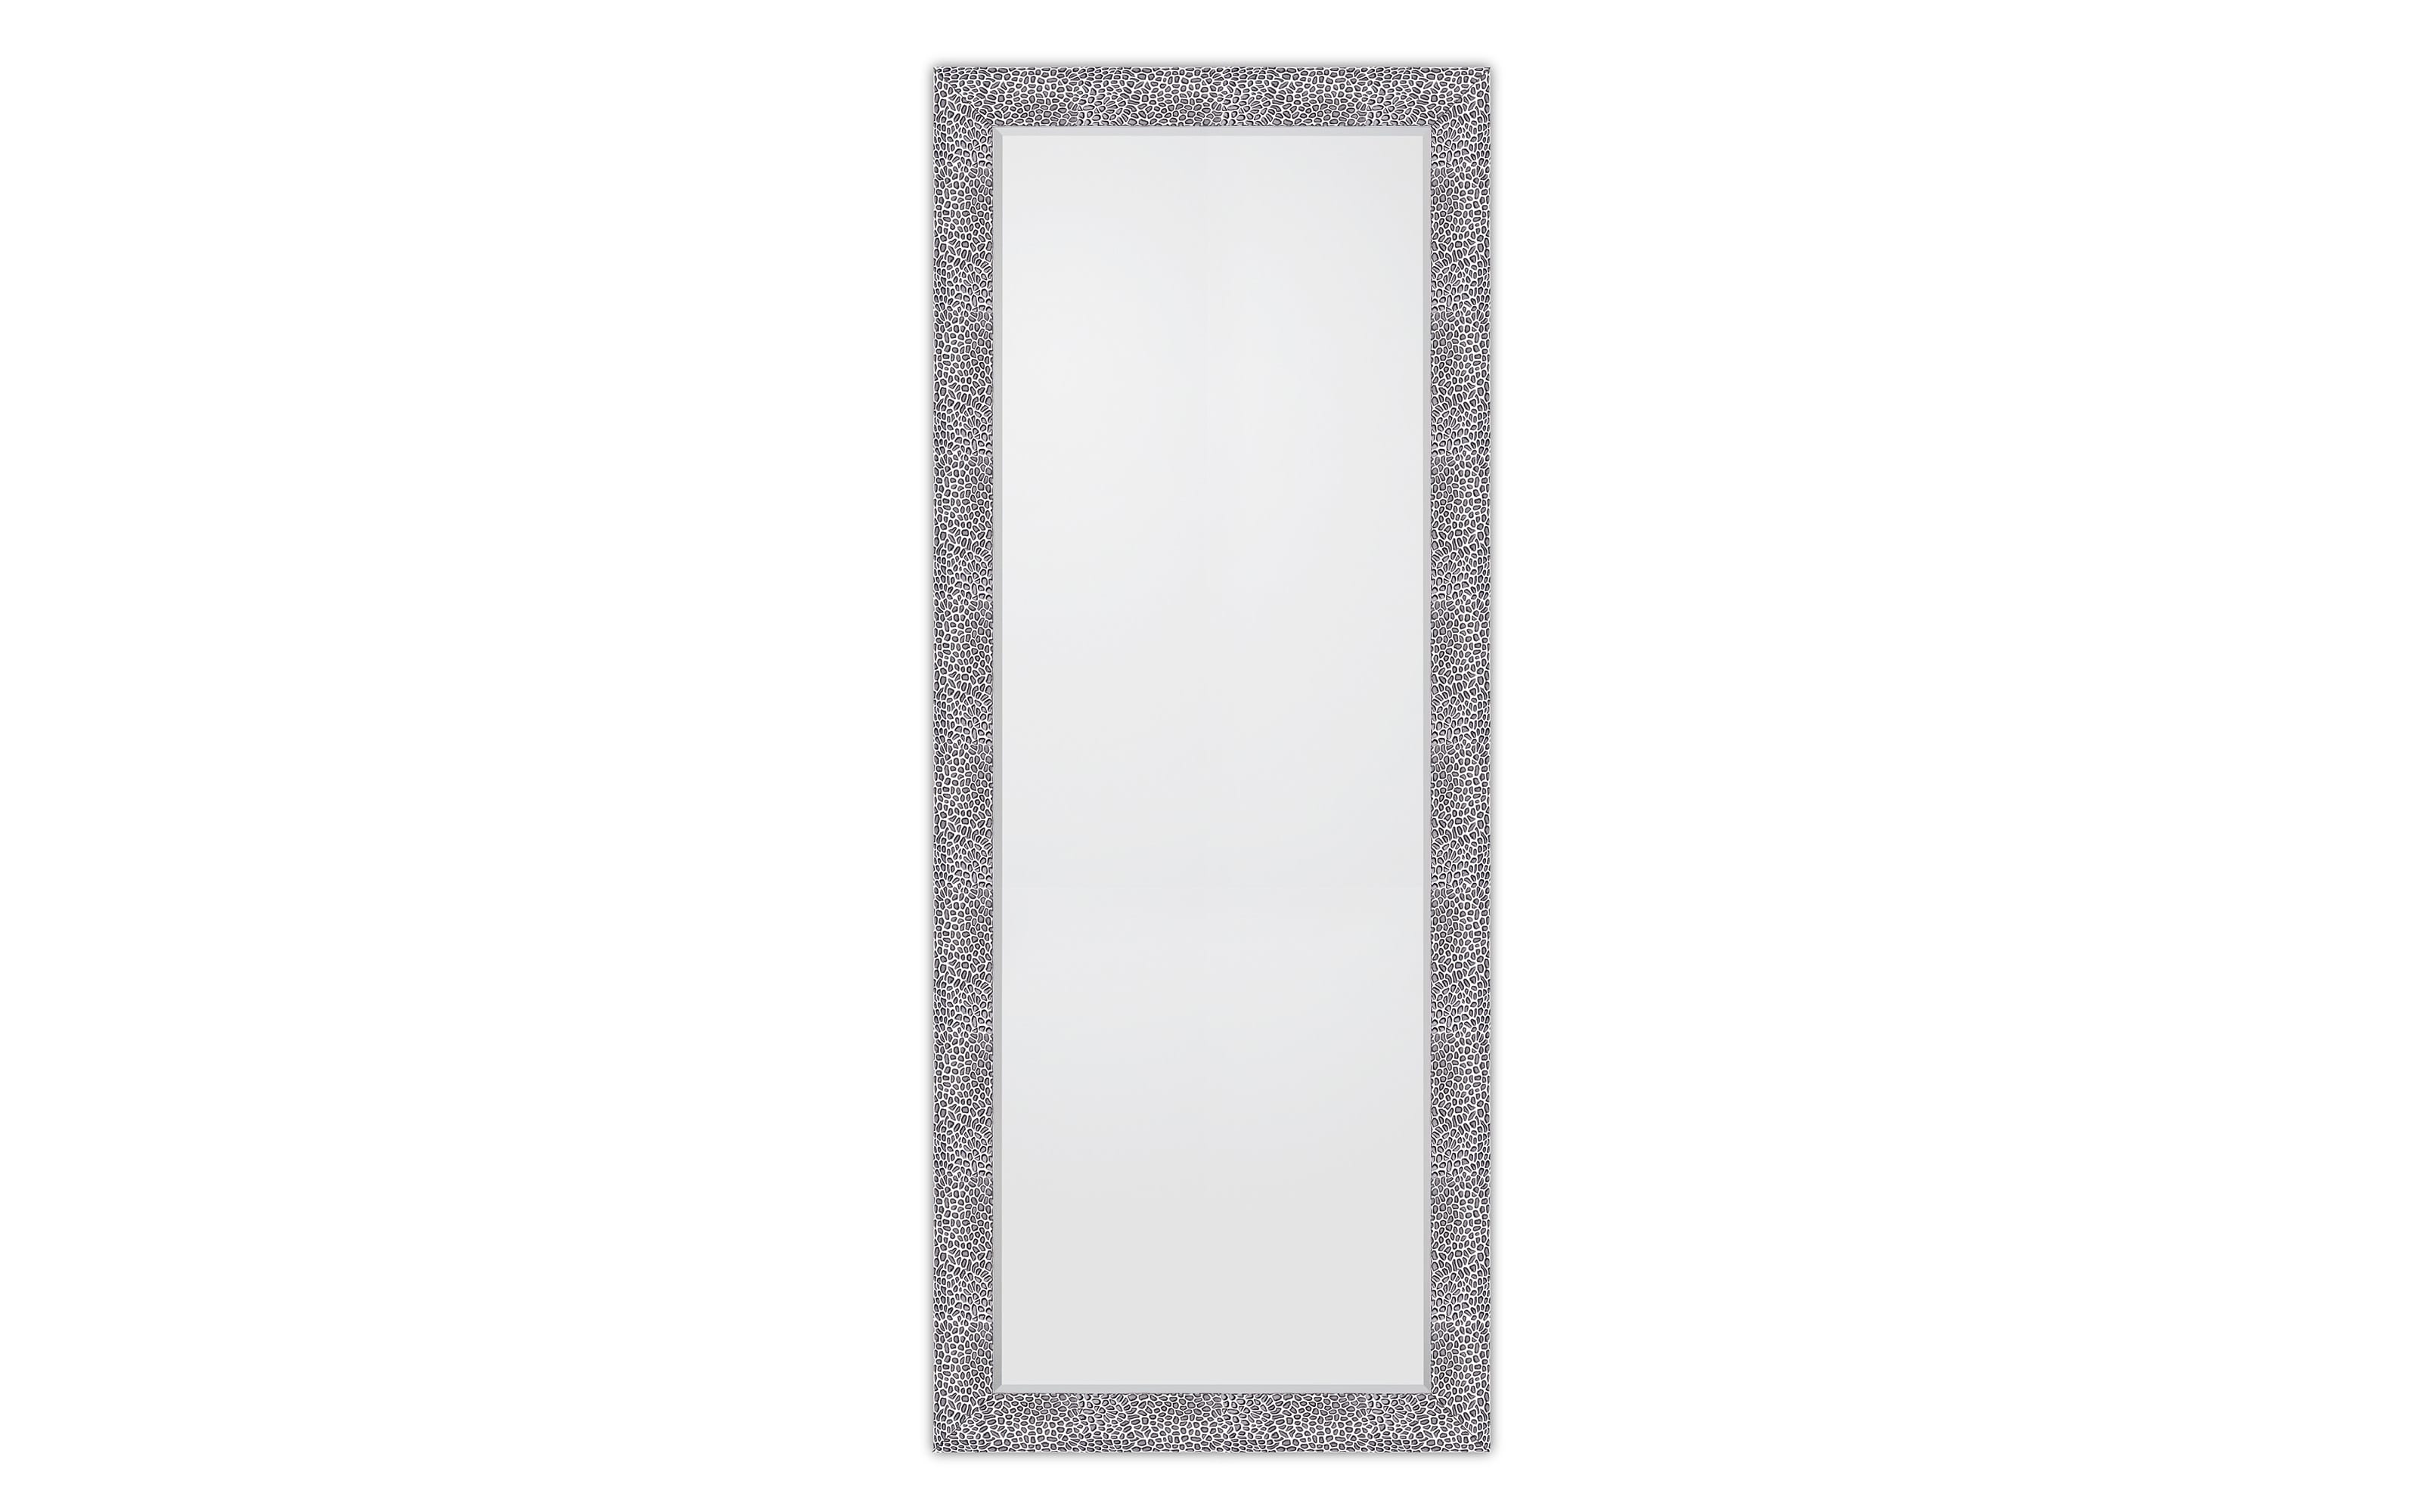 Rahmenspiegel Amy, schwarz/chromfarbig, 70 x 170 cm